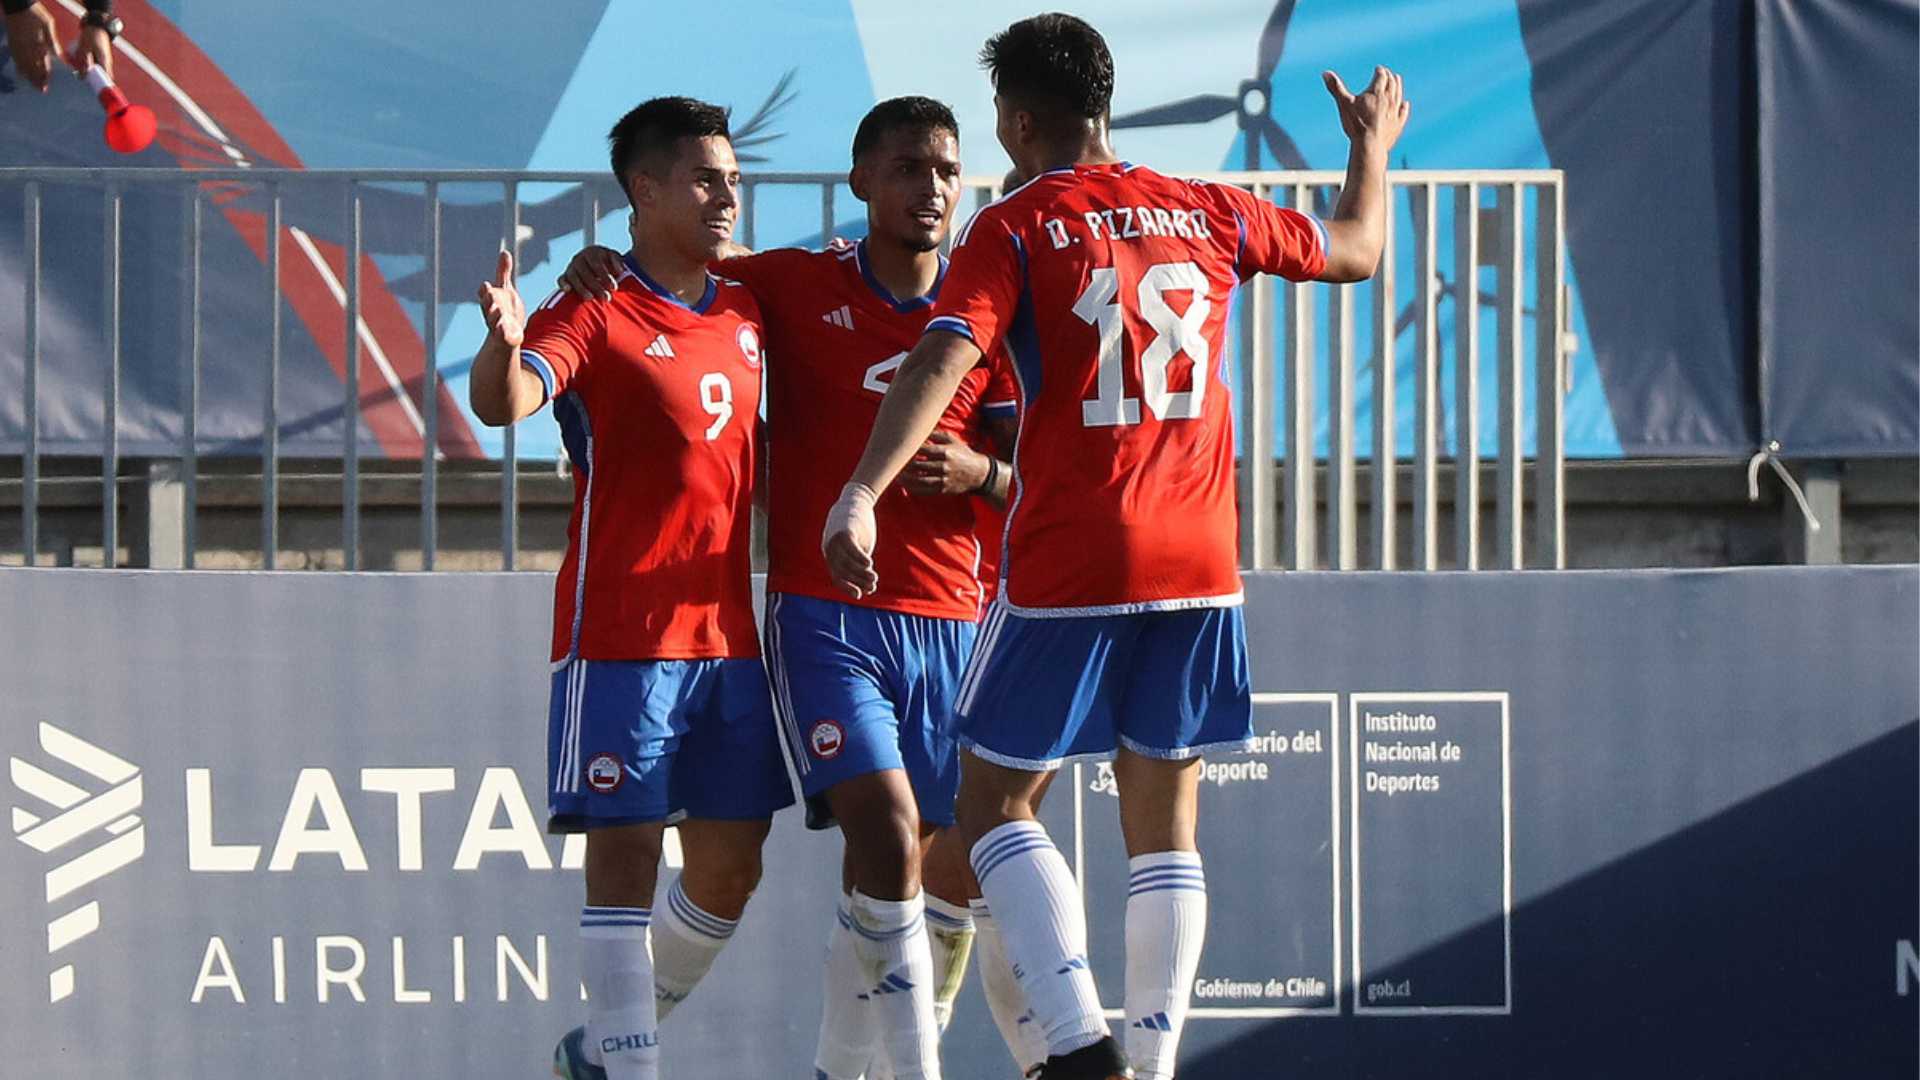 Chile avanzó a las semifinales del fútbol masculino tras vencer a Uruguay